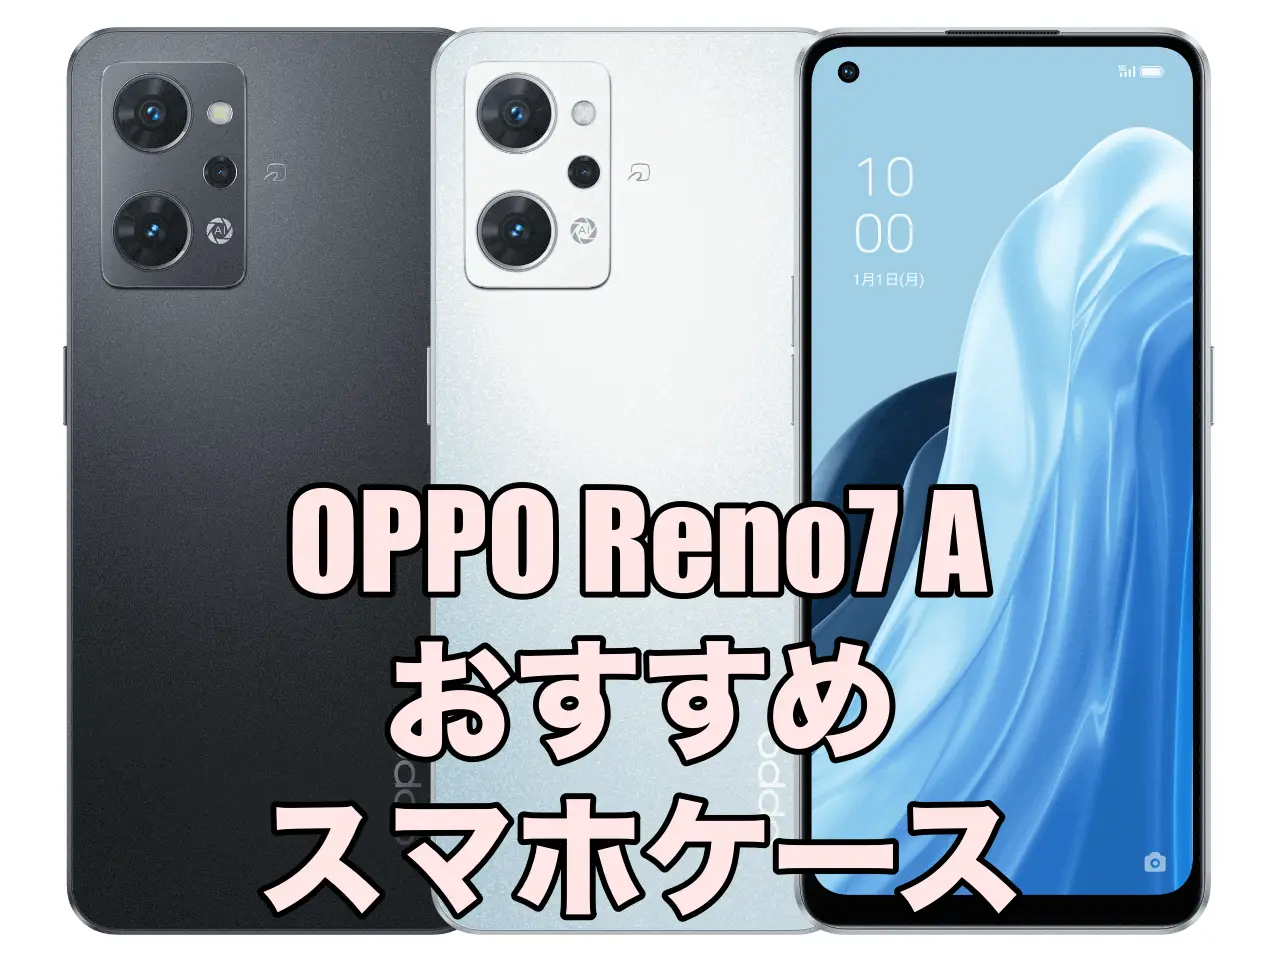 TEDTIKJT Oppo Reno7 A ケース 手帳型